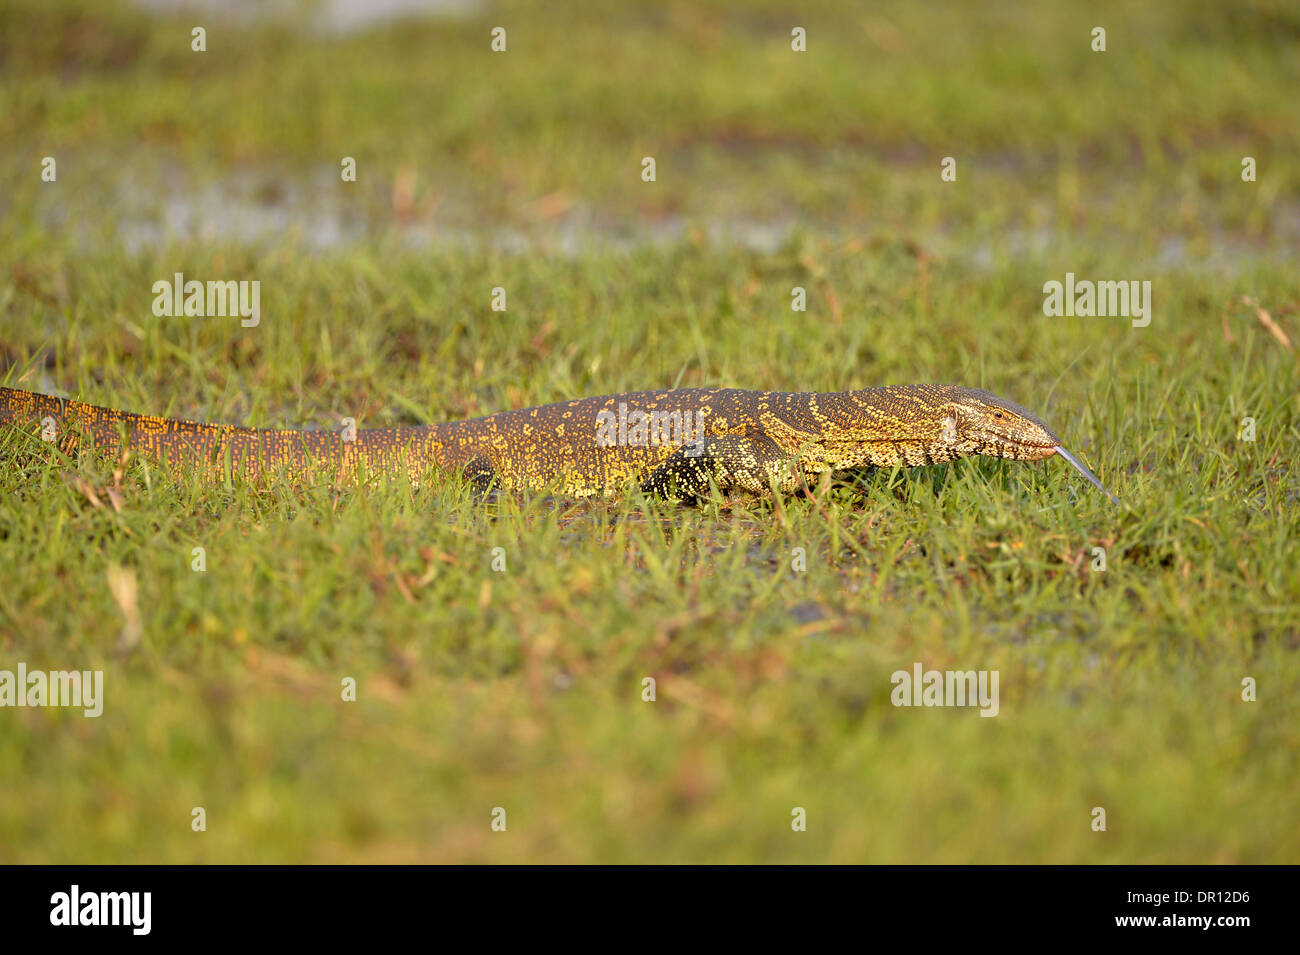 El lagarto monitor del Nilo (Varanus niloticus) caminar a través de la hierba mojada, witrh lengüeta extendida, el Parque Nacional de Kafue, Zambia, S Foto de stock